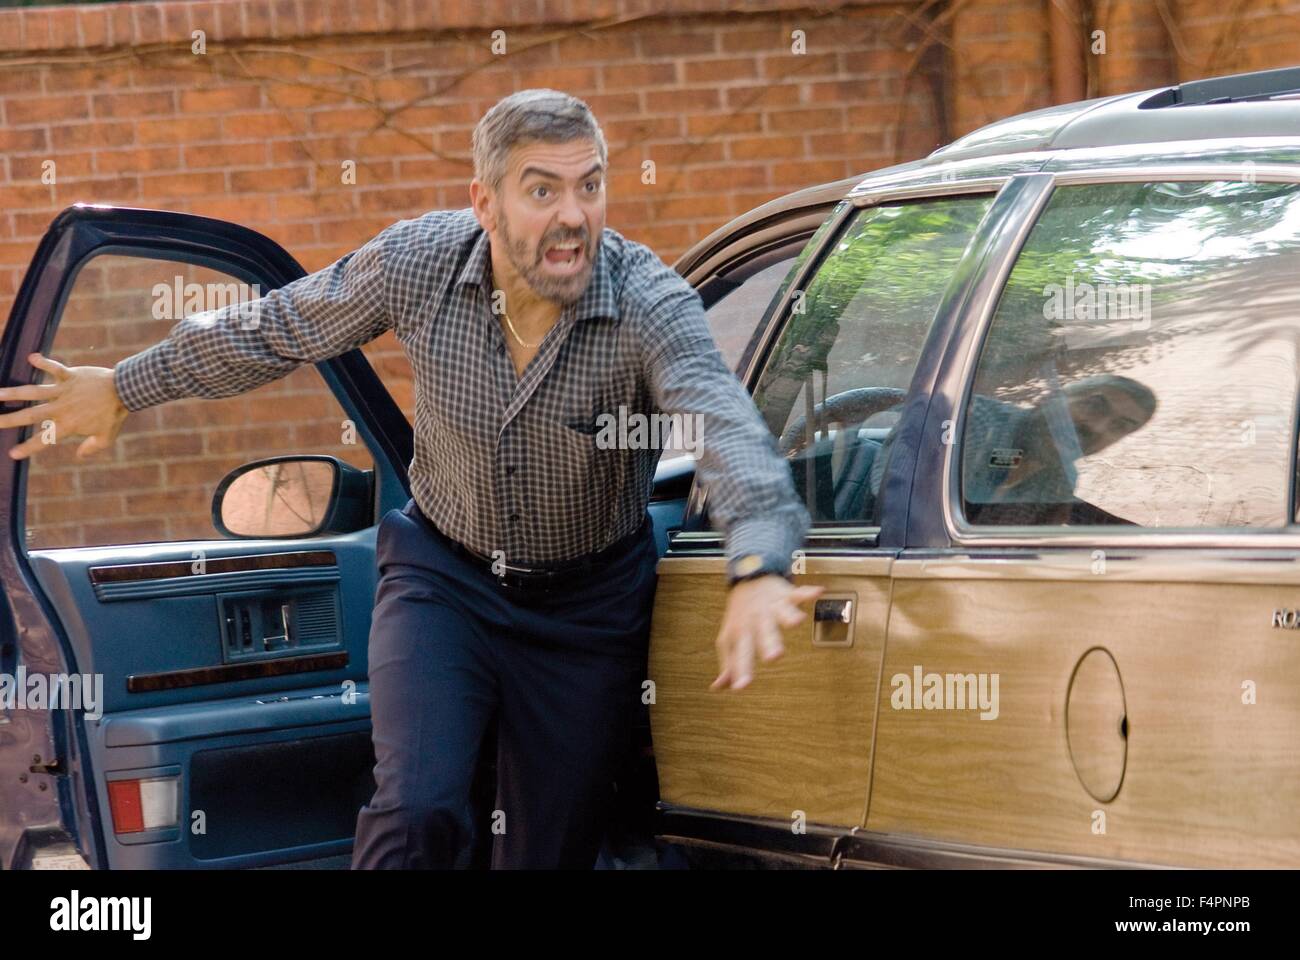 George Clooney / Lire / 2008 réalisé par les frères Coen [Macall Polay /Focus / Universal Studios] Banque D'Images